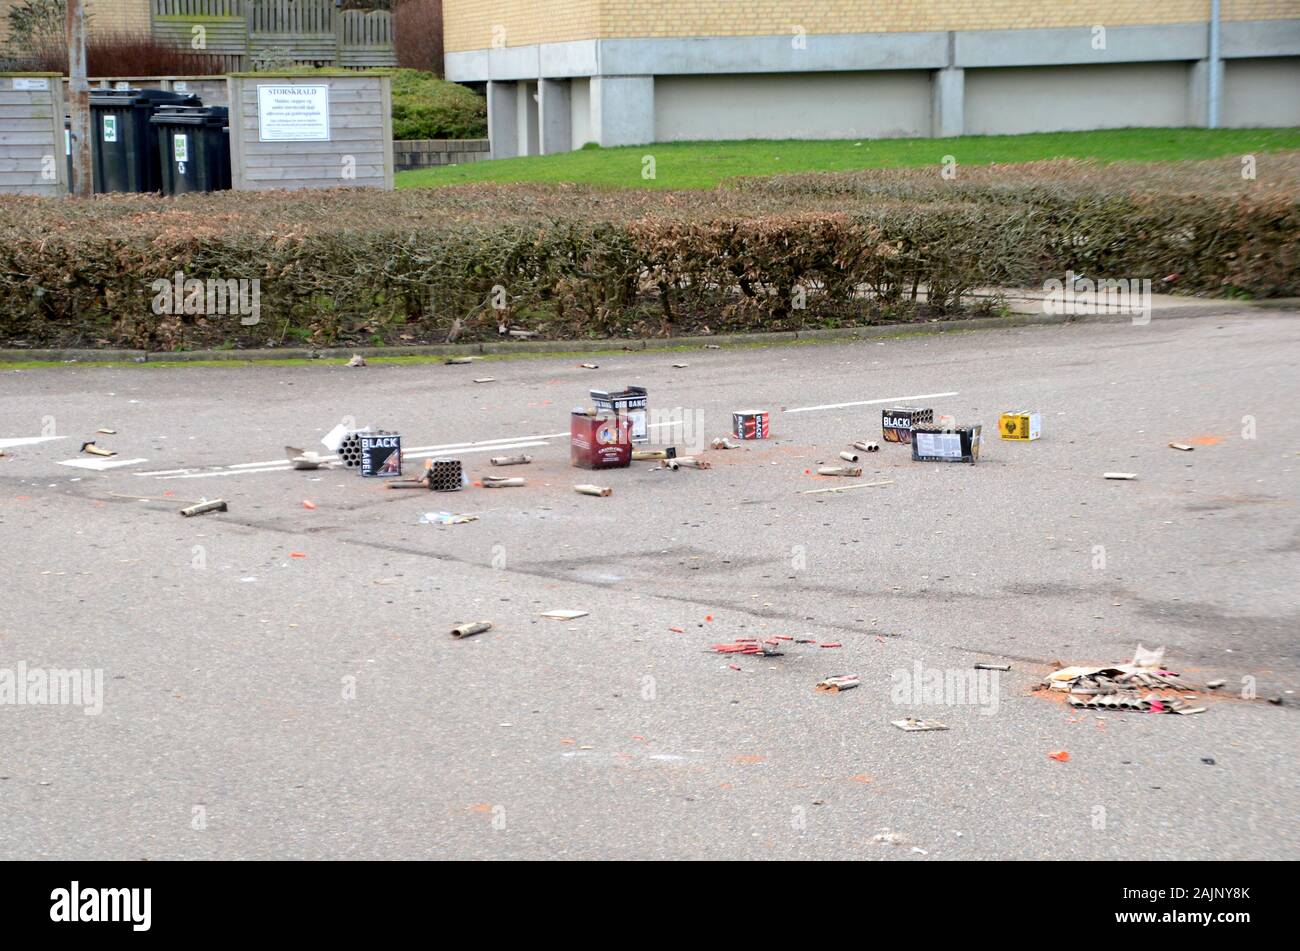 Sonderborg, Dinamarca - 1 de enero de 2020: los residuos después de Año Nuevo con fuegos artificiales flotan en la calle Foto de stock